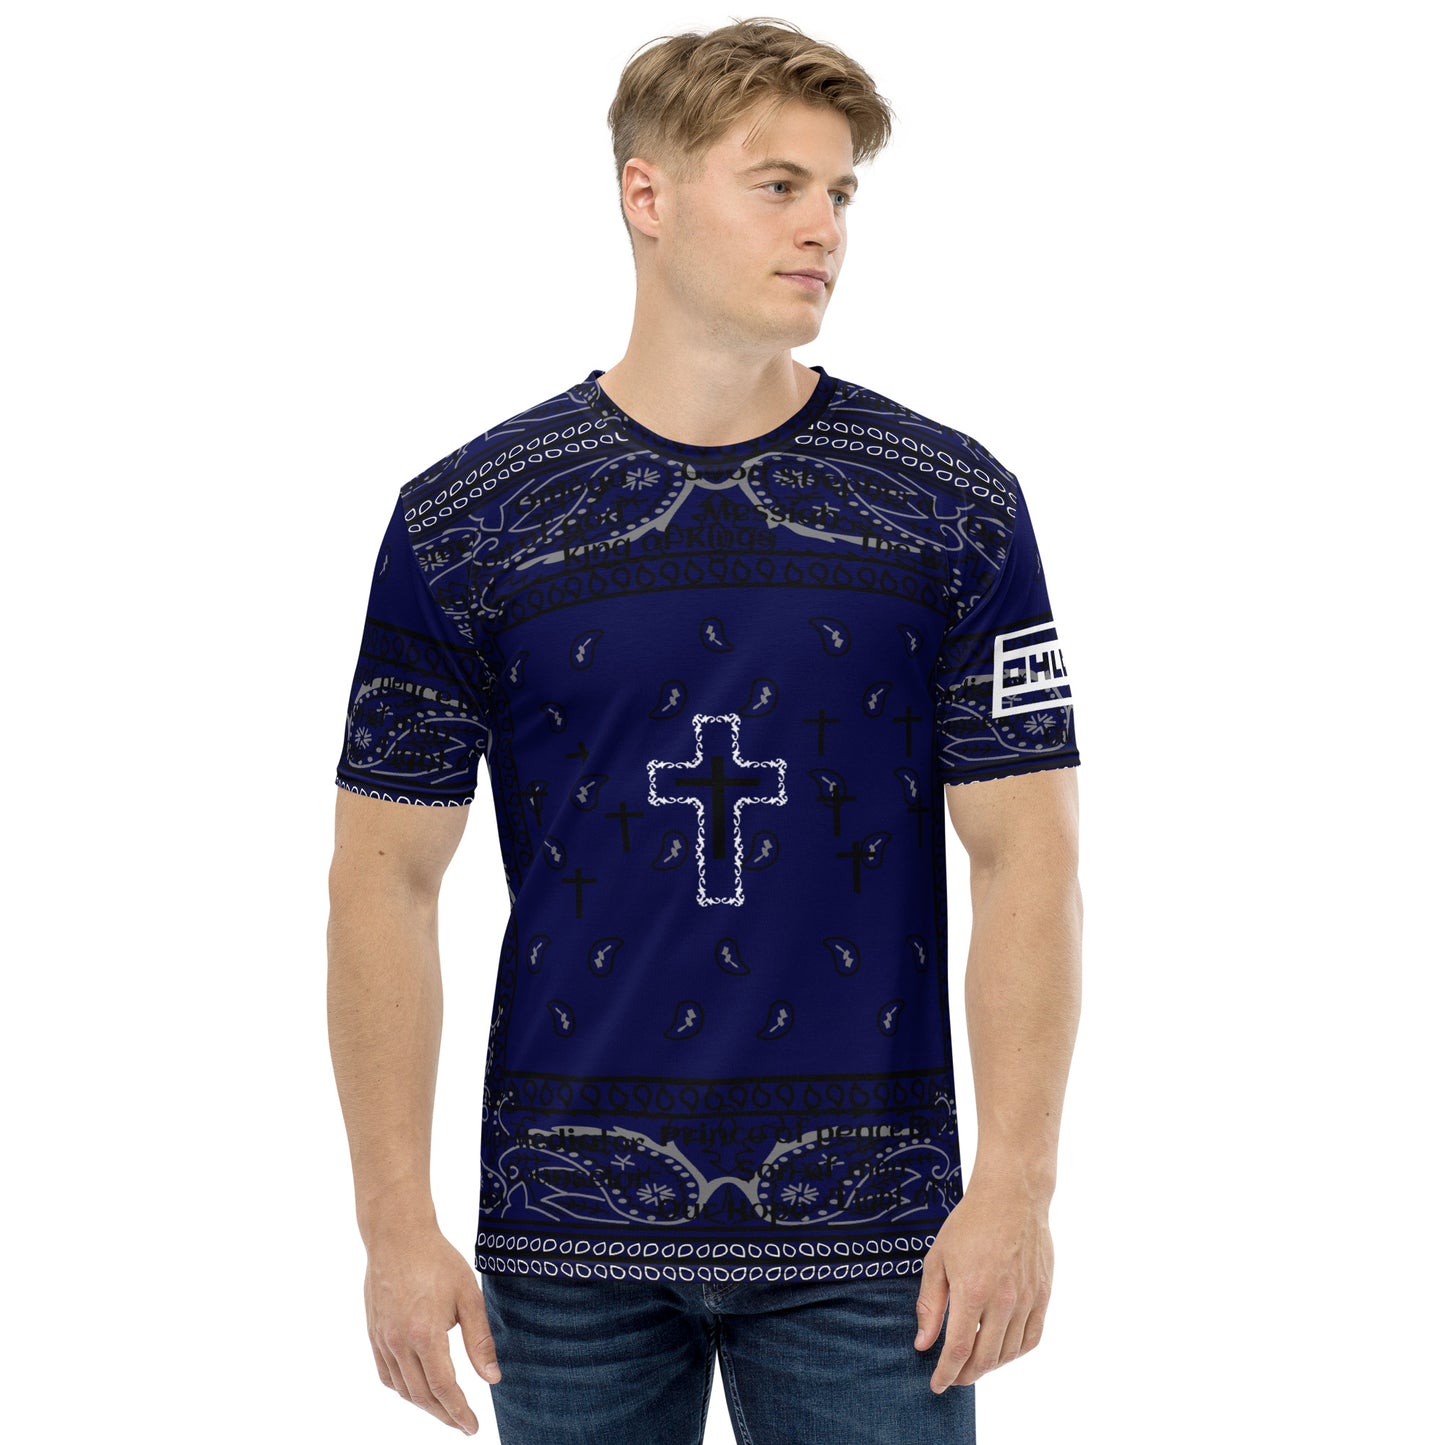 Men's t-shirt BLUE BNDNA cross